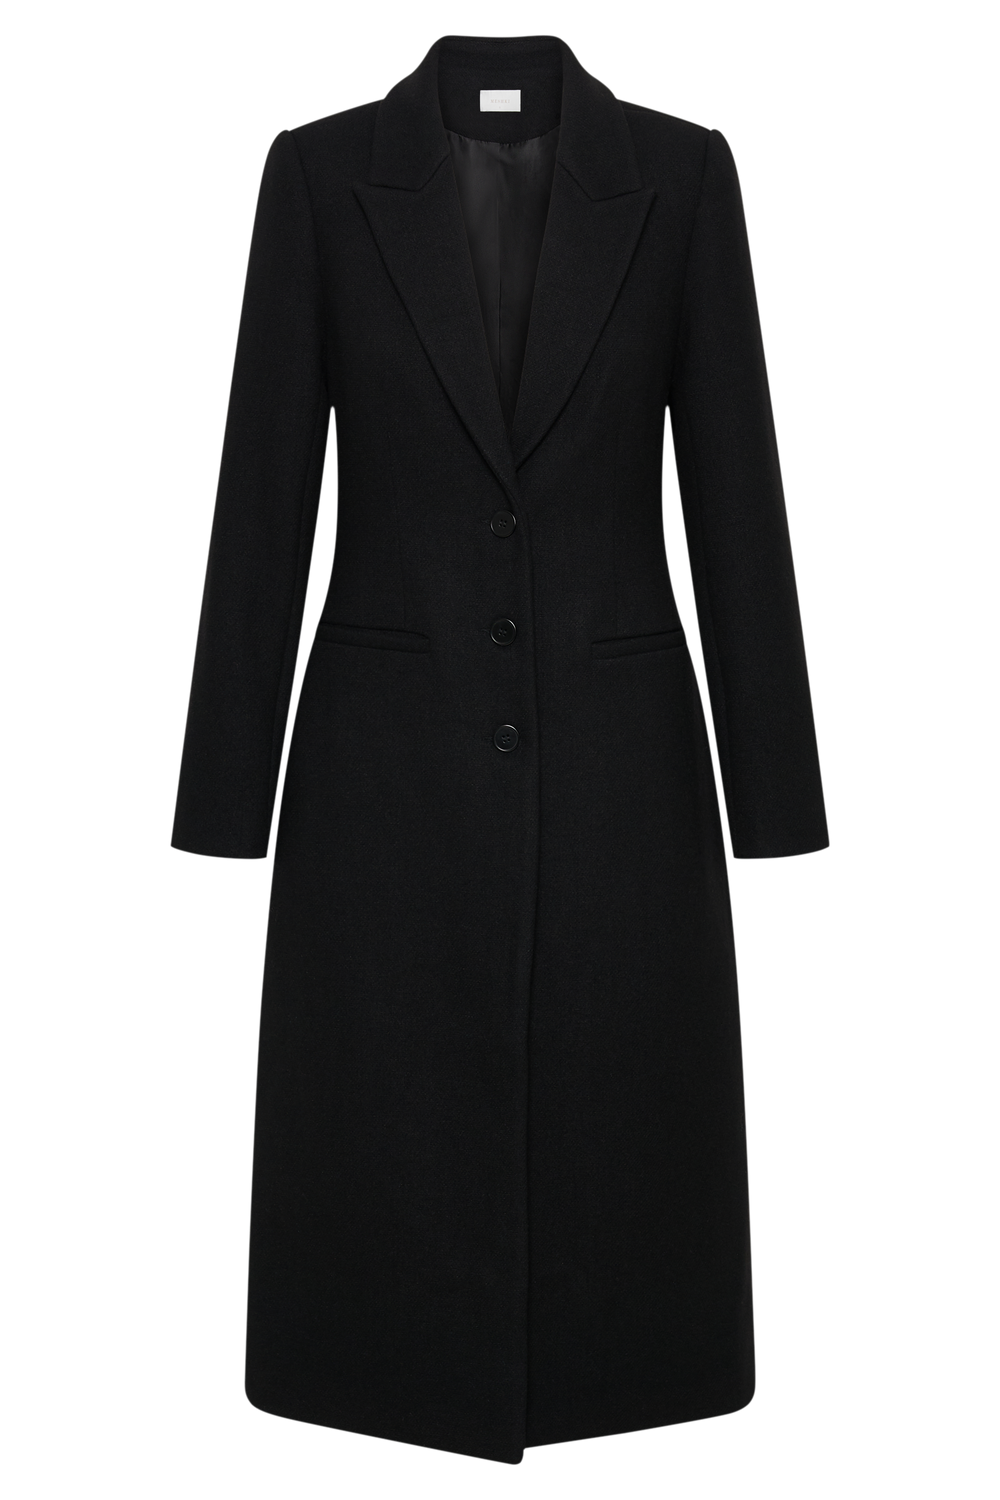 Adelaide Cinched Wool Coat - Black